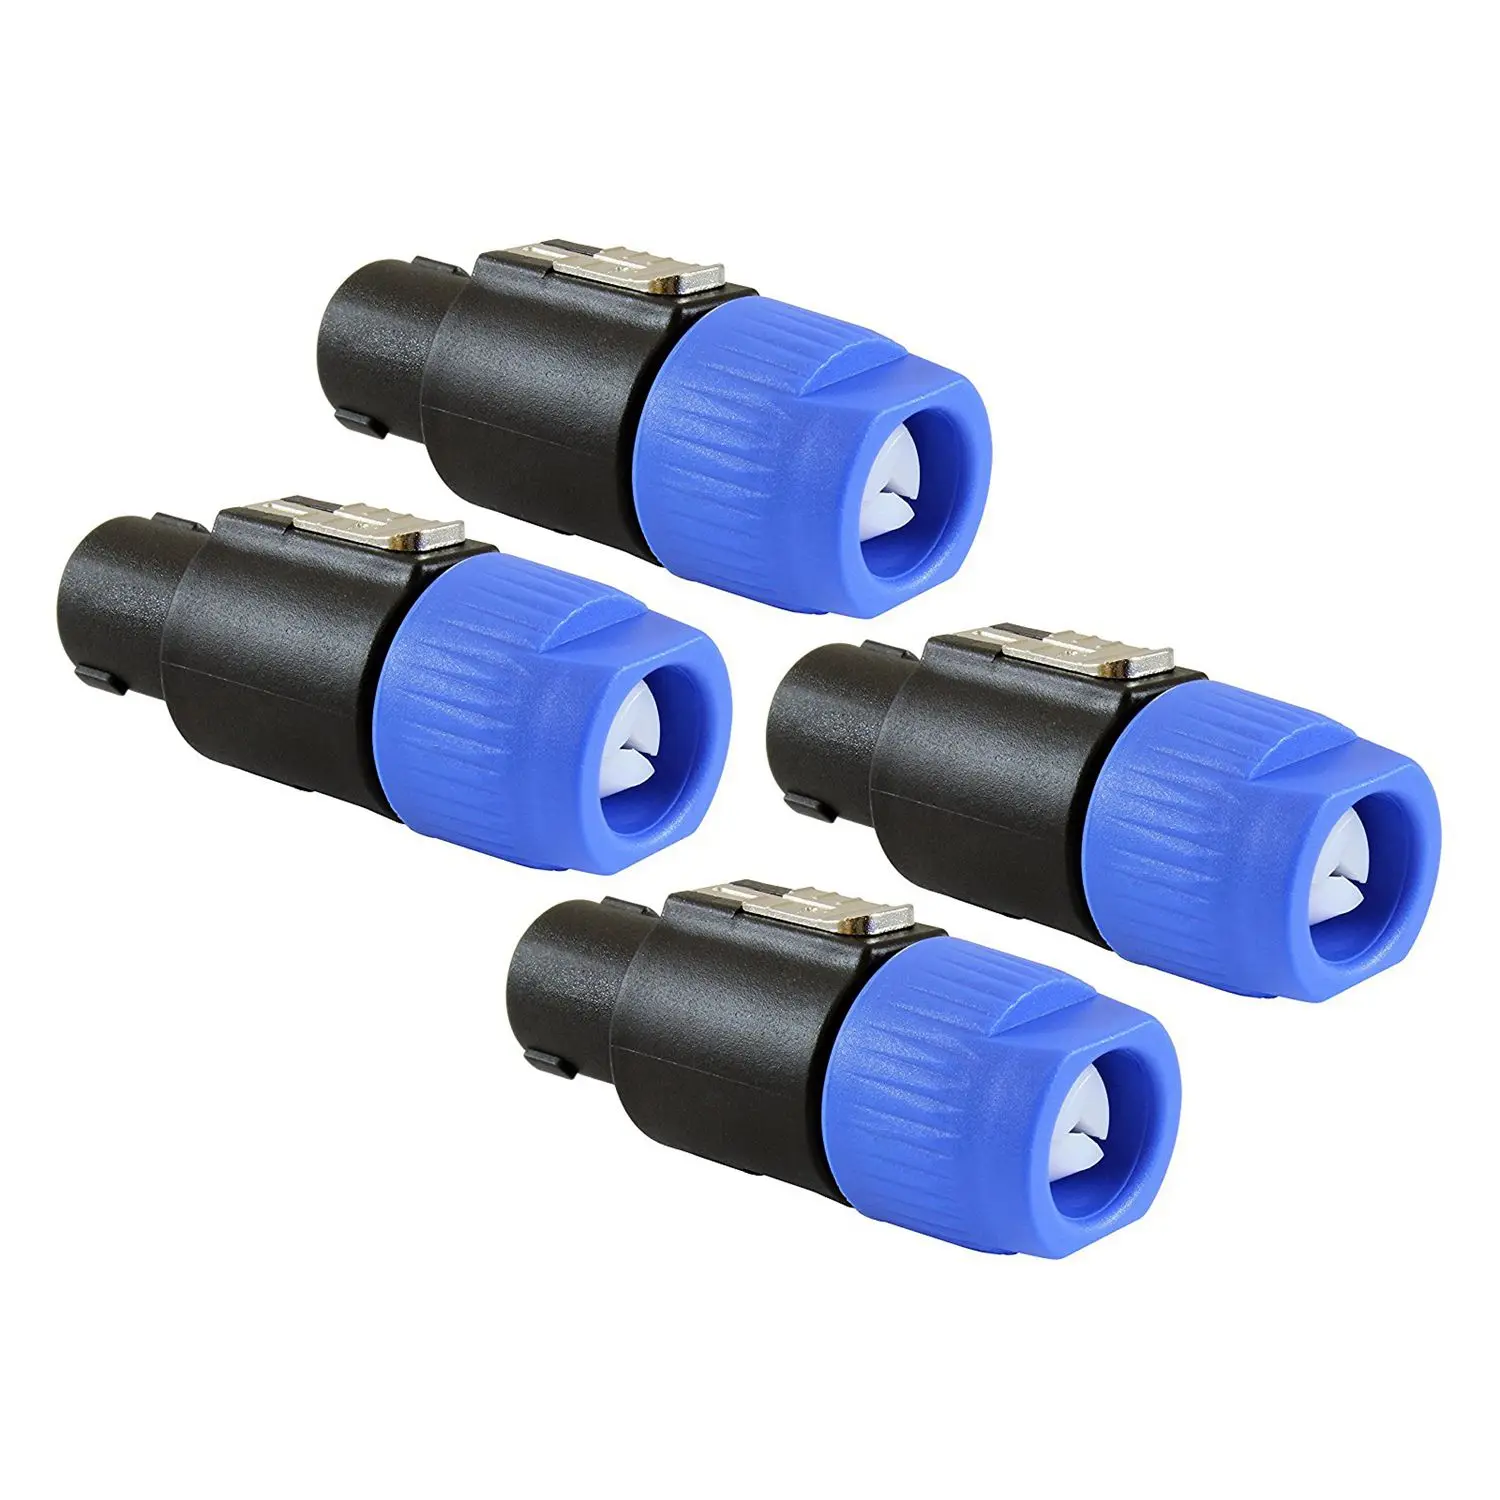 

Speaker Plug Twist Lock 4 Pole Speaker Plug compatible with Neutrik Speakon NL4FC, NL4FX, NLT4X, NL2FC - 4 PACK